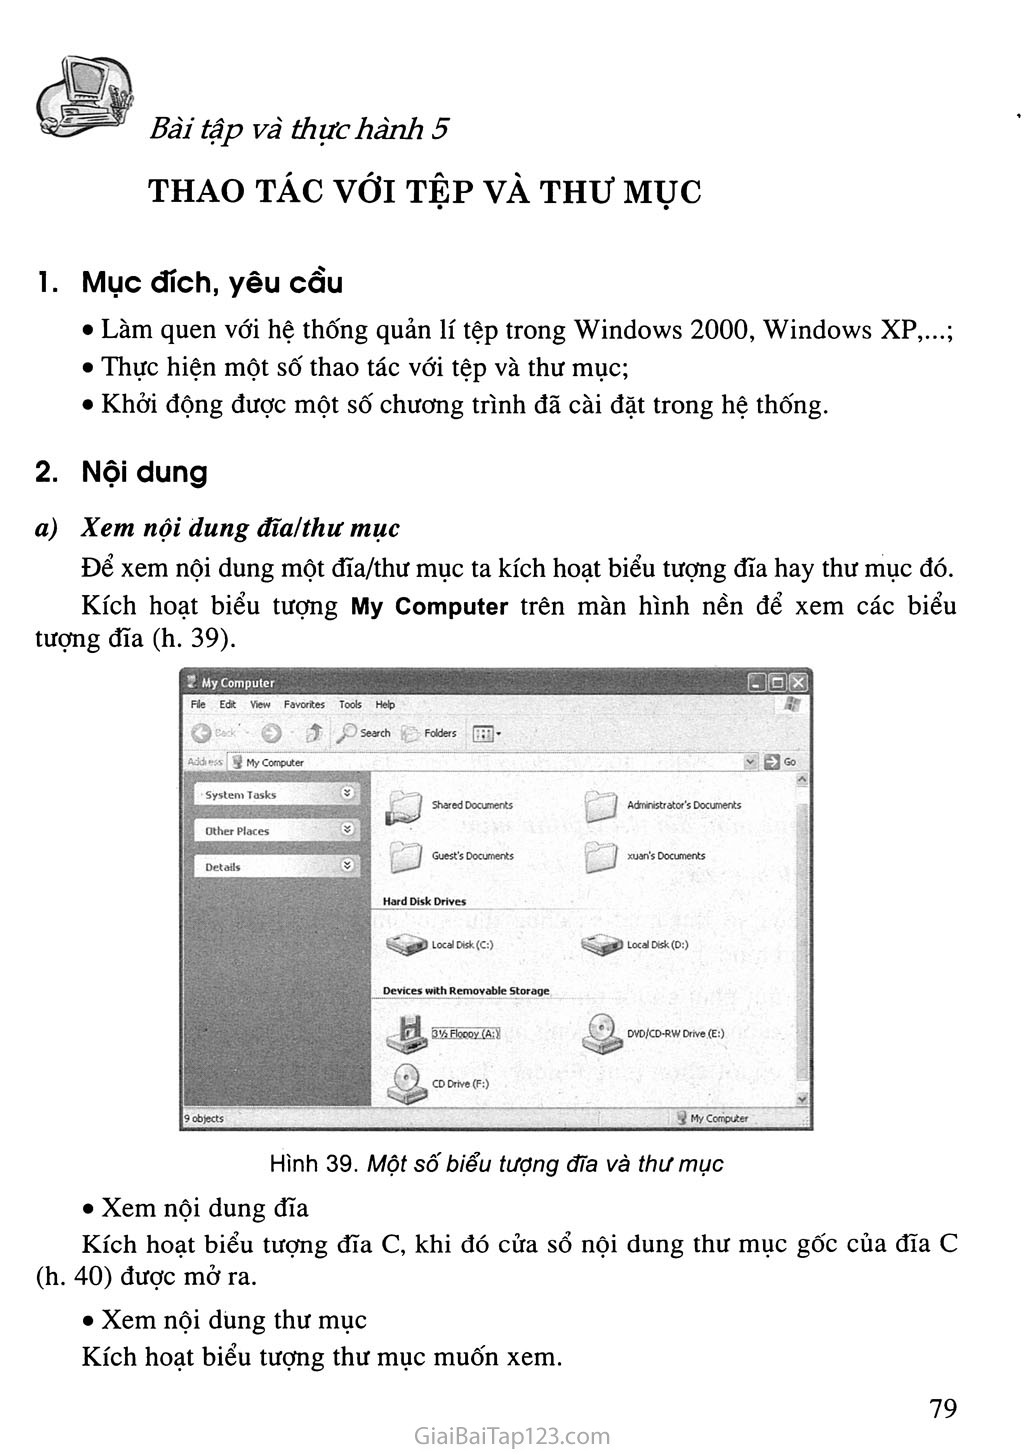 SGK Tin học 10, tệp tin, thư mục, màn hình nền windows: Hãy cùng chúng tôi khám phá các tệp tin và thư mục hiệu quả hơn với SGK Tin học 10 cực kỳ hữu ích. Khi kết hợp với màn hình nền Windows đẹp mắt, chắc chắn trải nghiệm làm việc của bạn sẽ tuyệt vời hơn bao giờ hết.